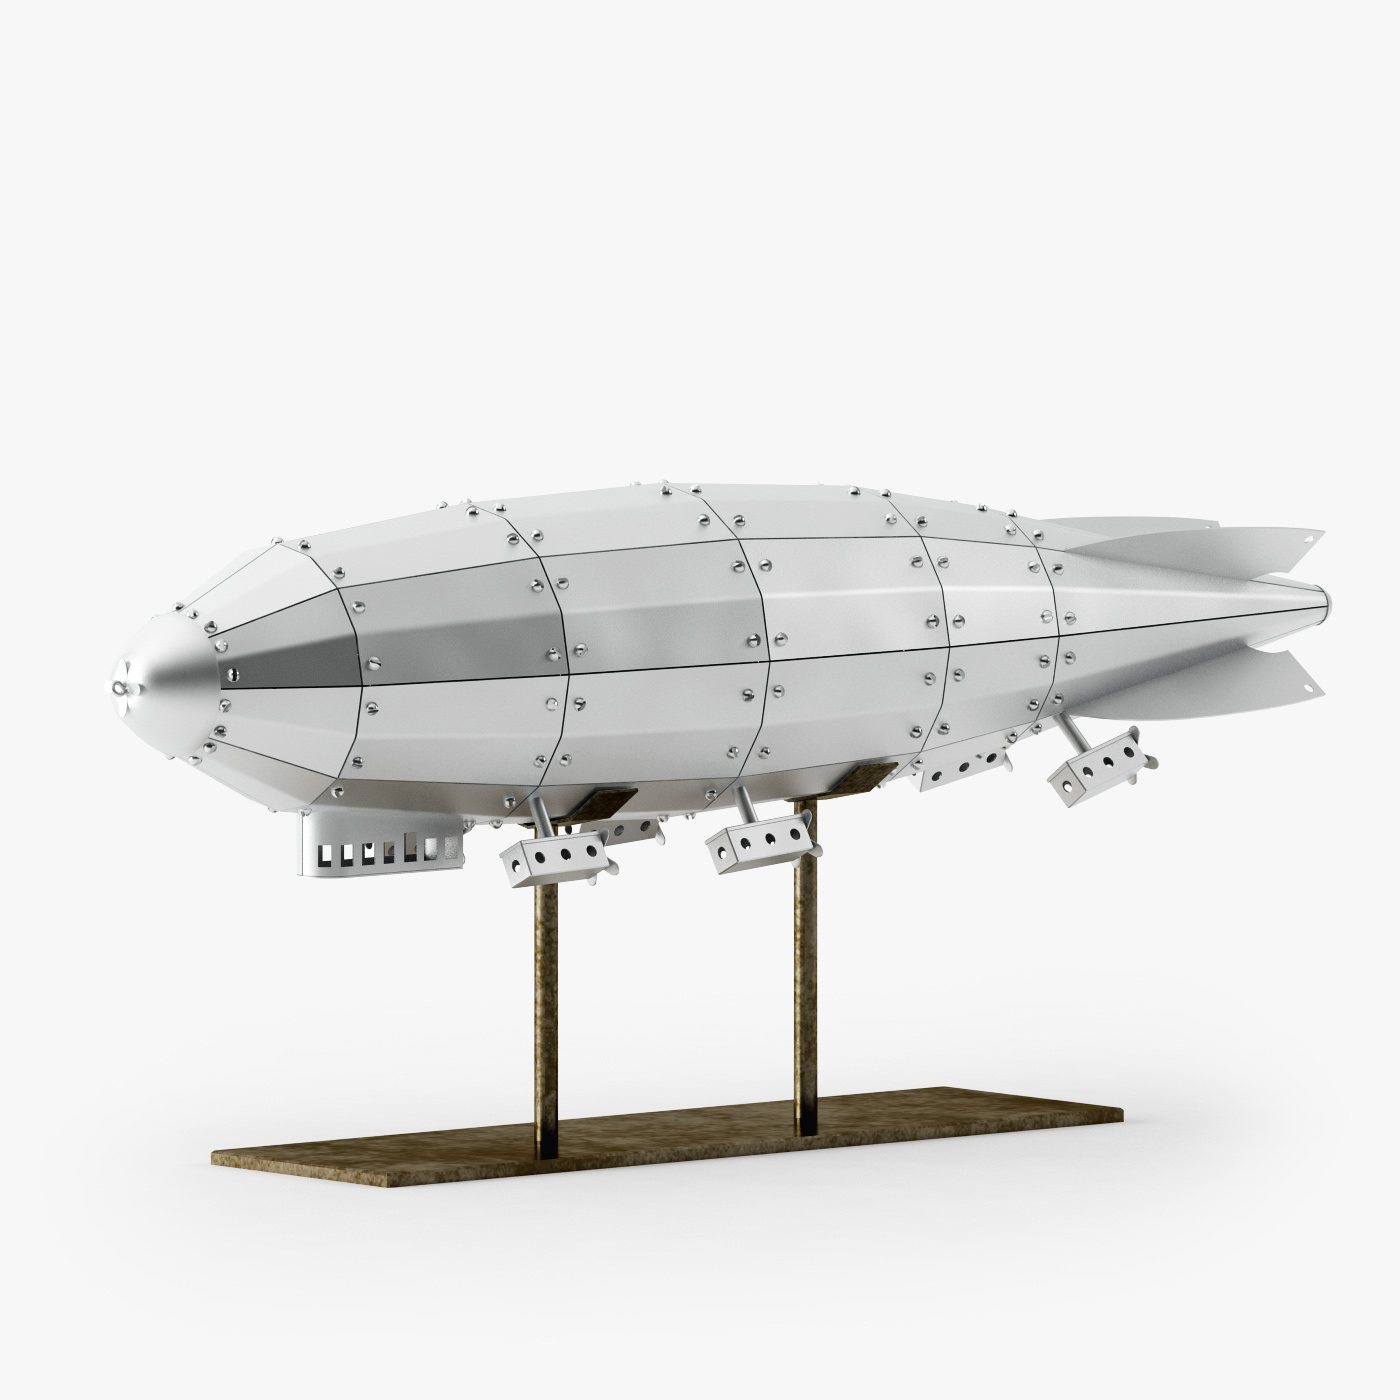 Darmowe modele 3d - Zeppelin model